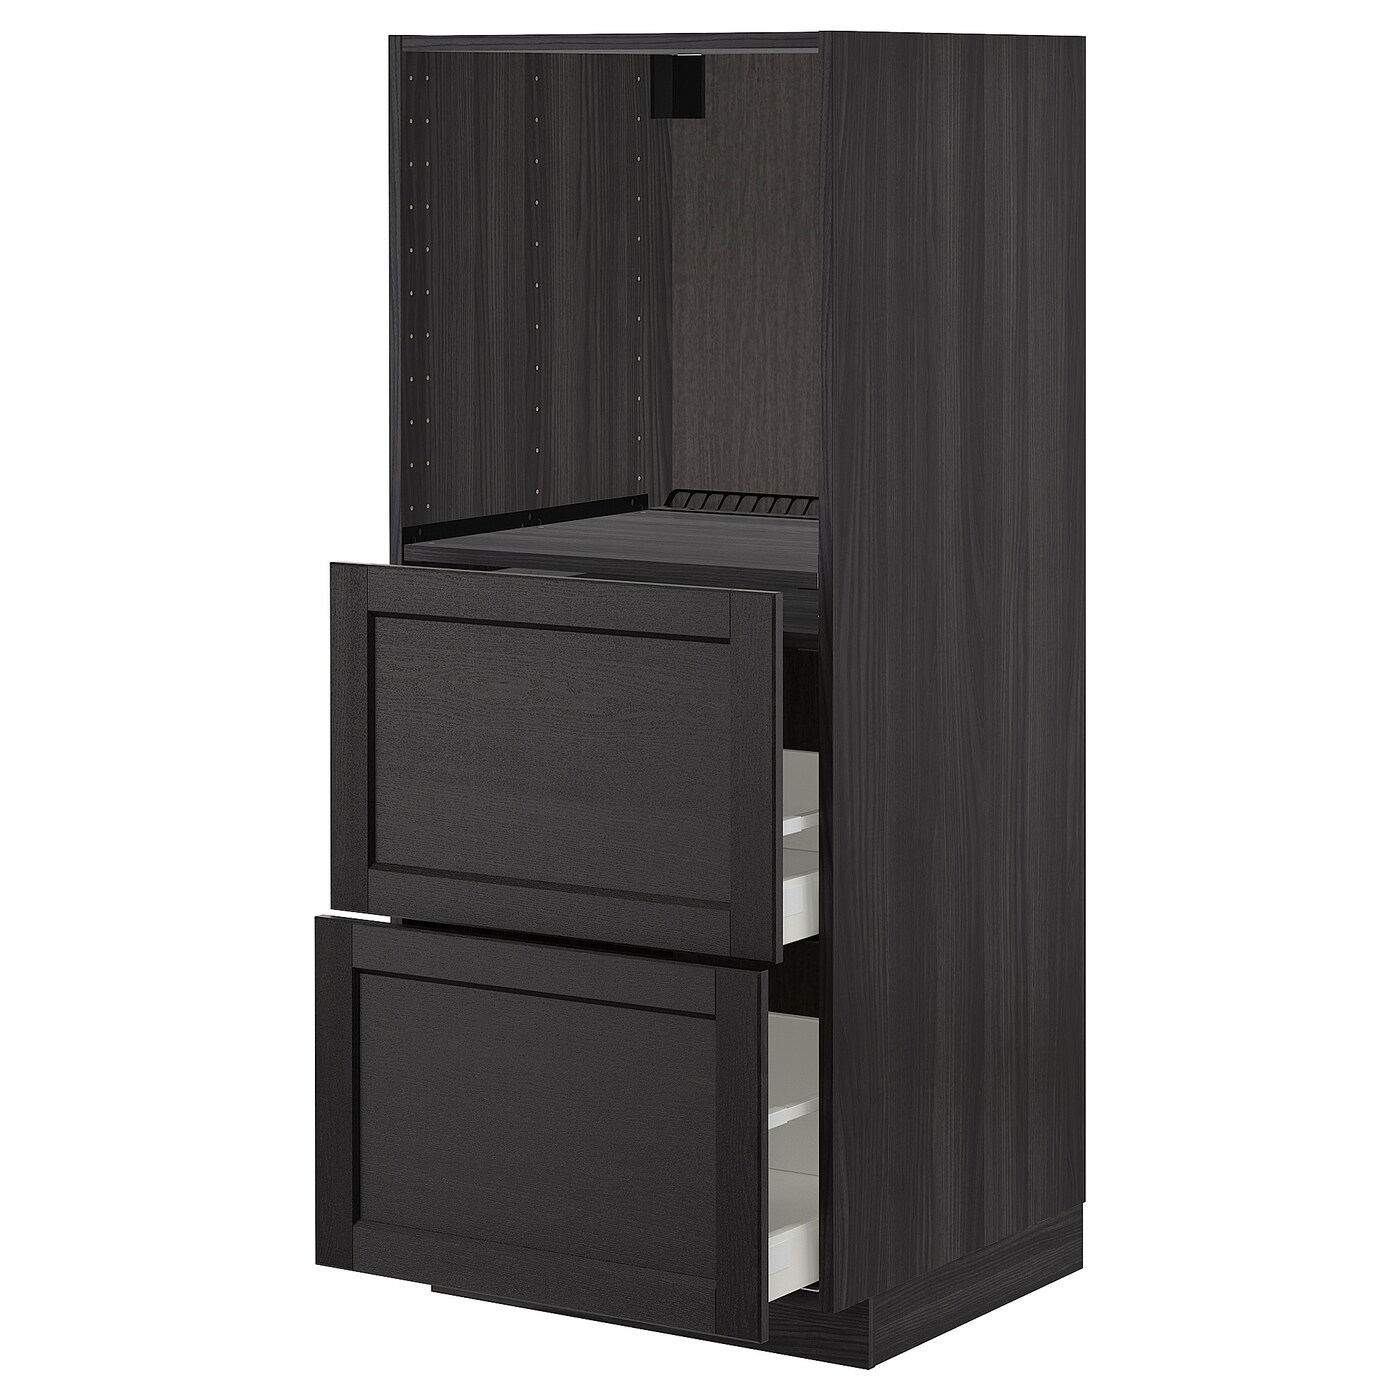 Напольный кухонный шкаф  - IKEA METOD MAXIMERA, 88x62x60см, темно-серый, МЕТОД МАКСИМЕРА ИКЕА